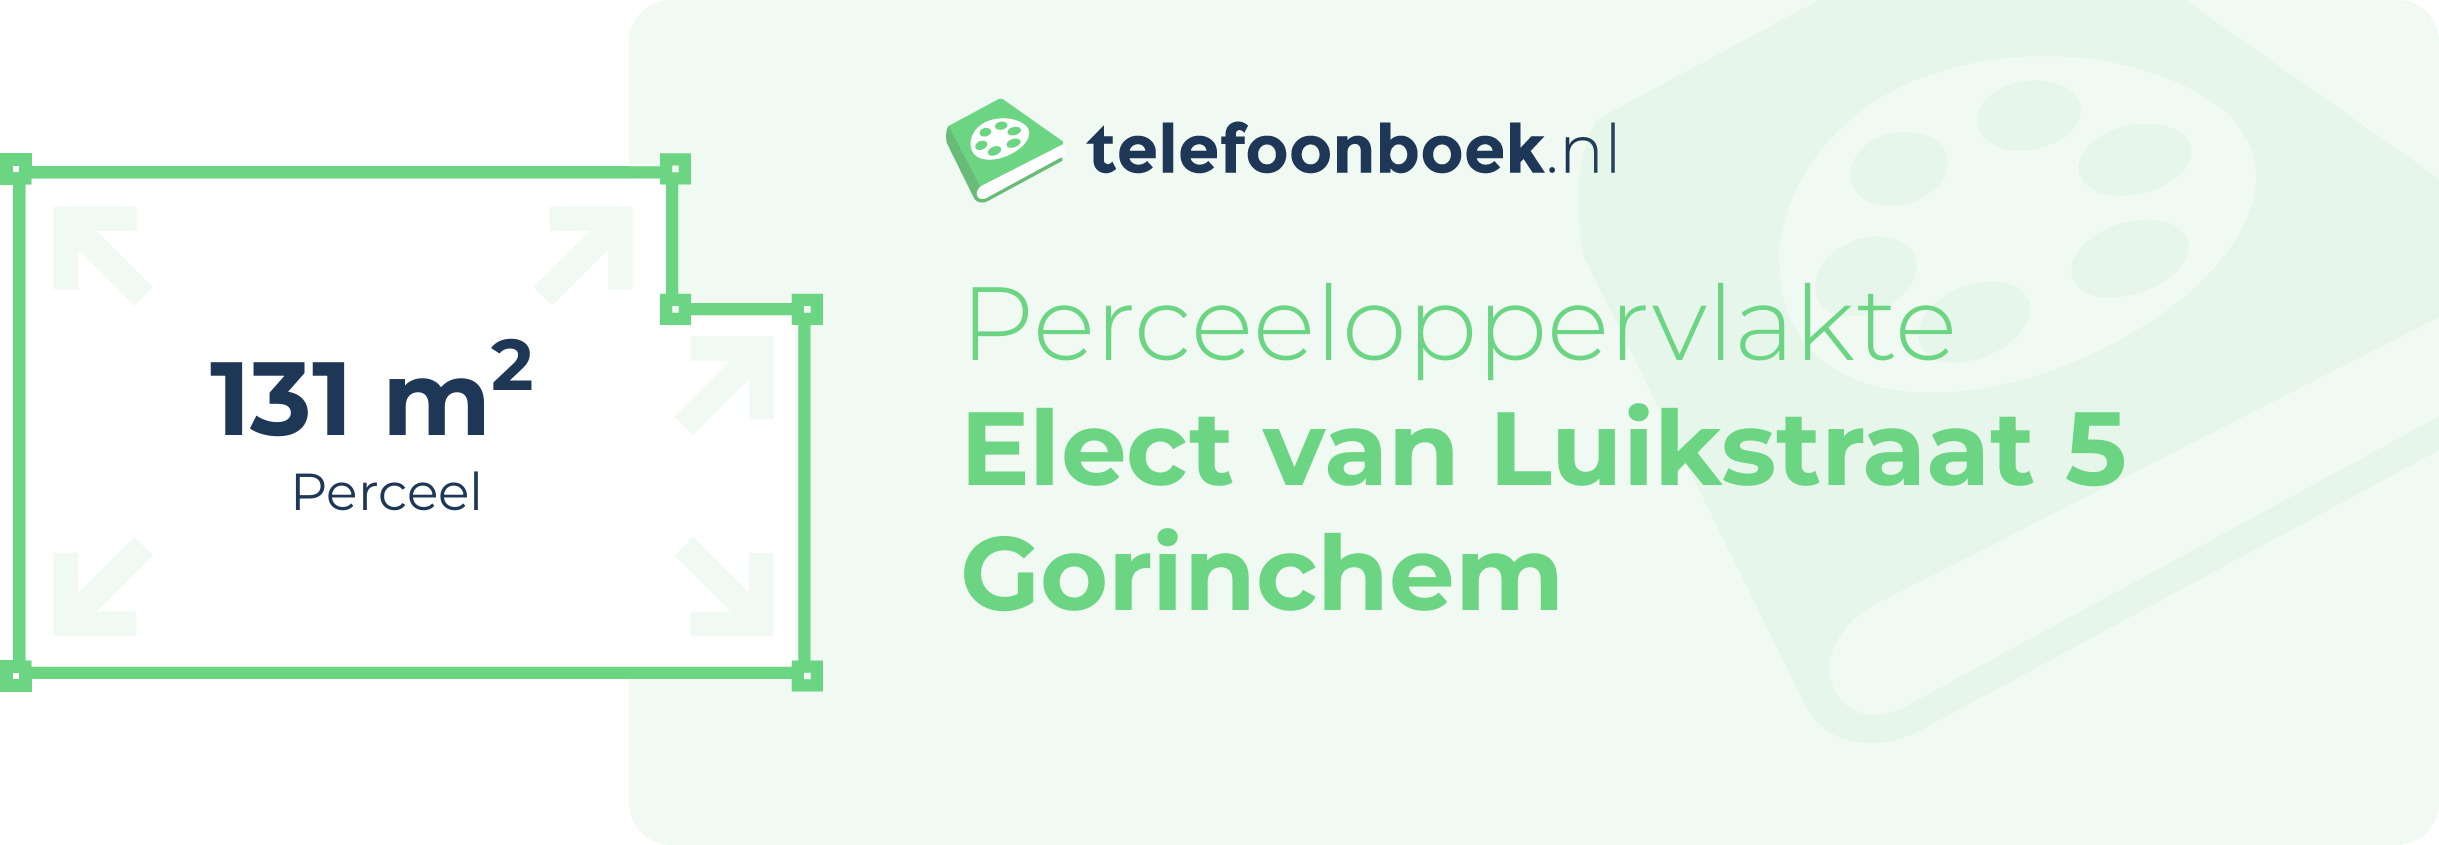 Perceeloppervlakte Elect Van Luikstraat 5 Gorinchem